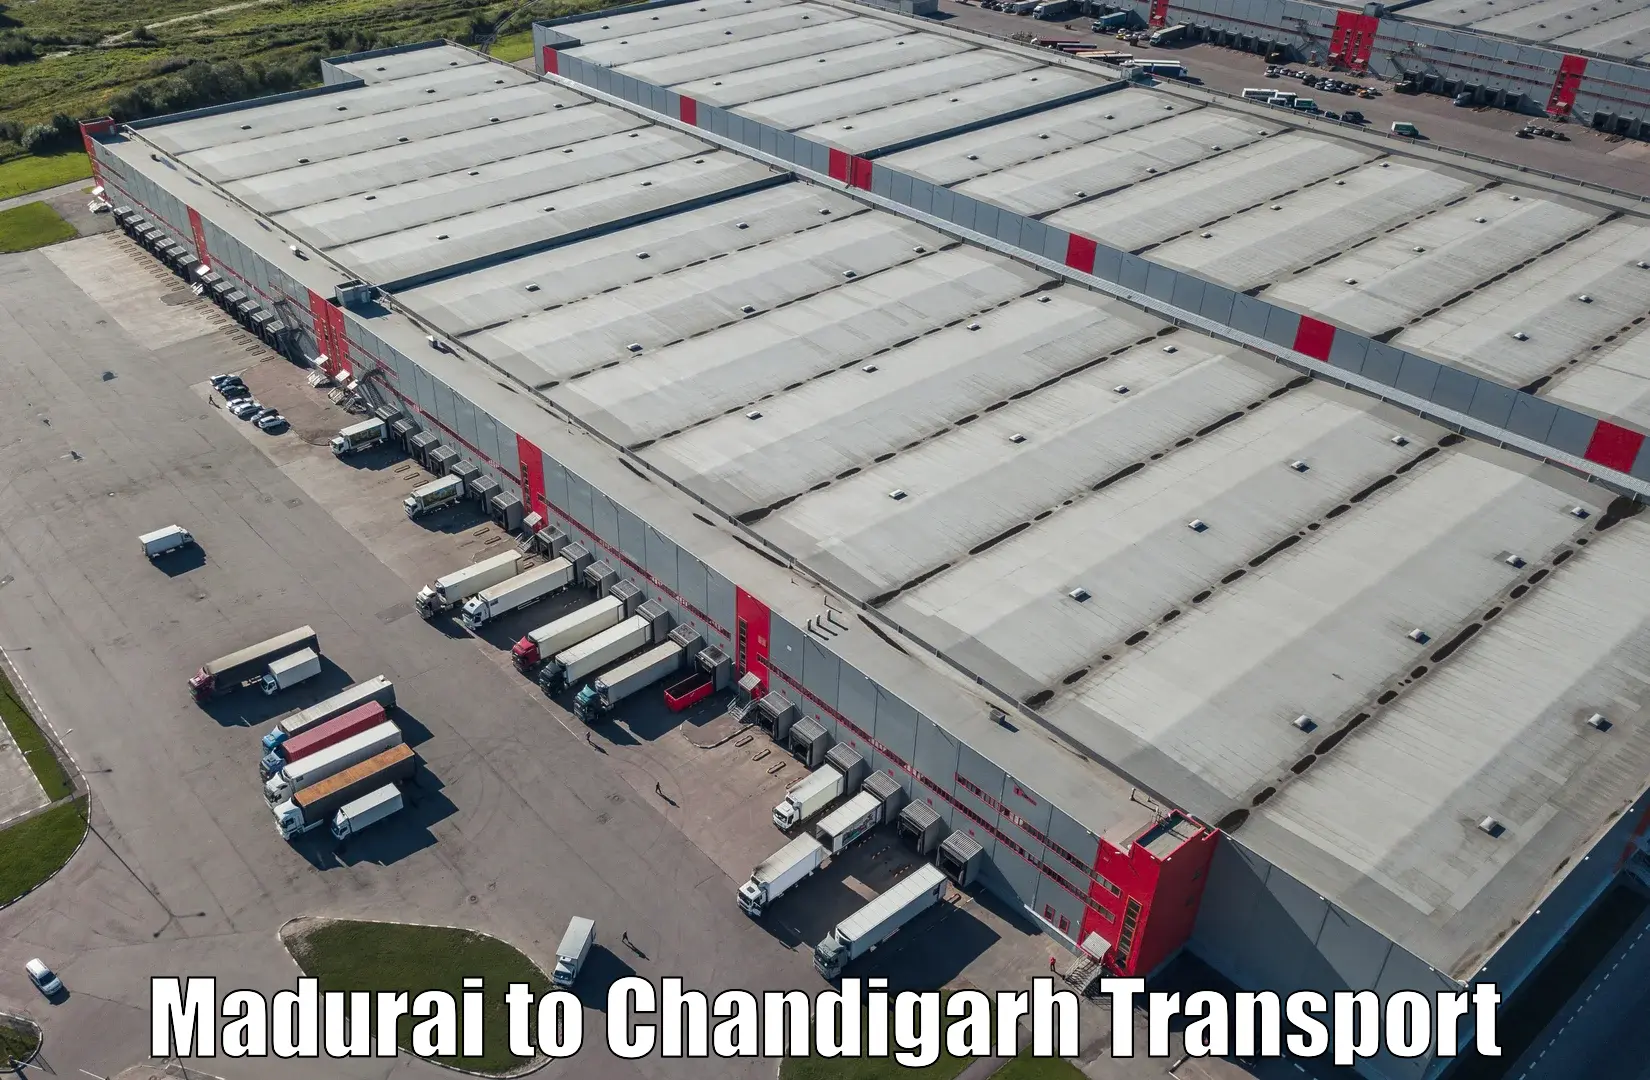 Online transport service Madurai to Chandigarh